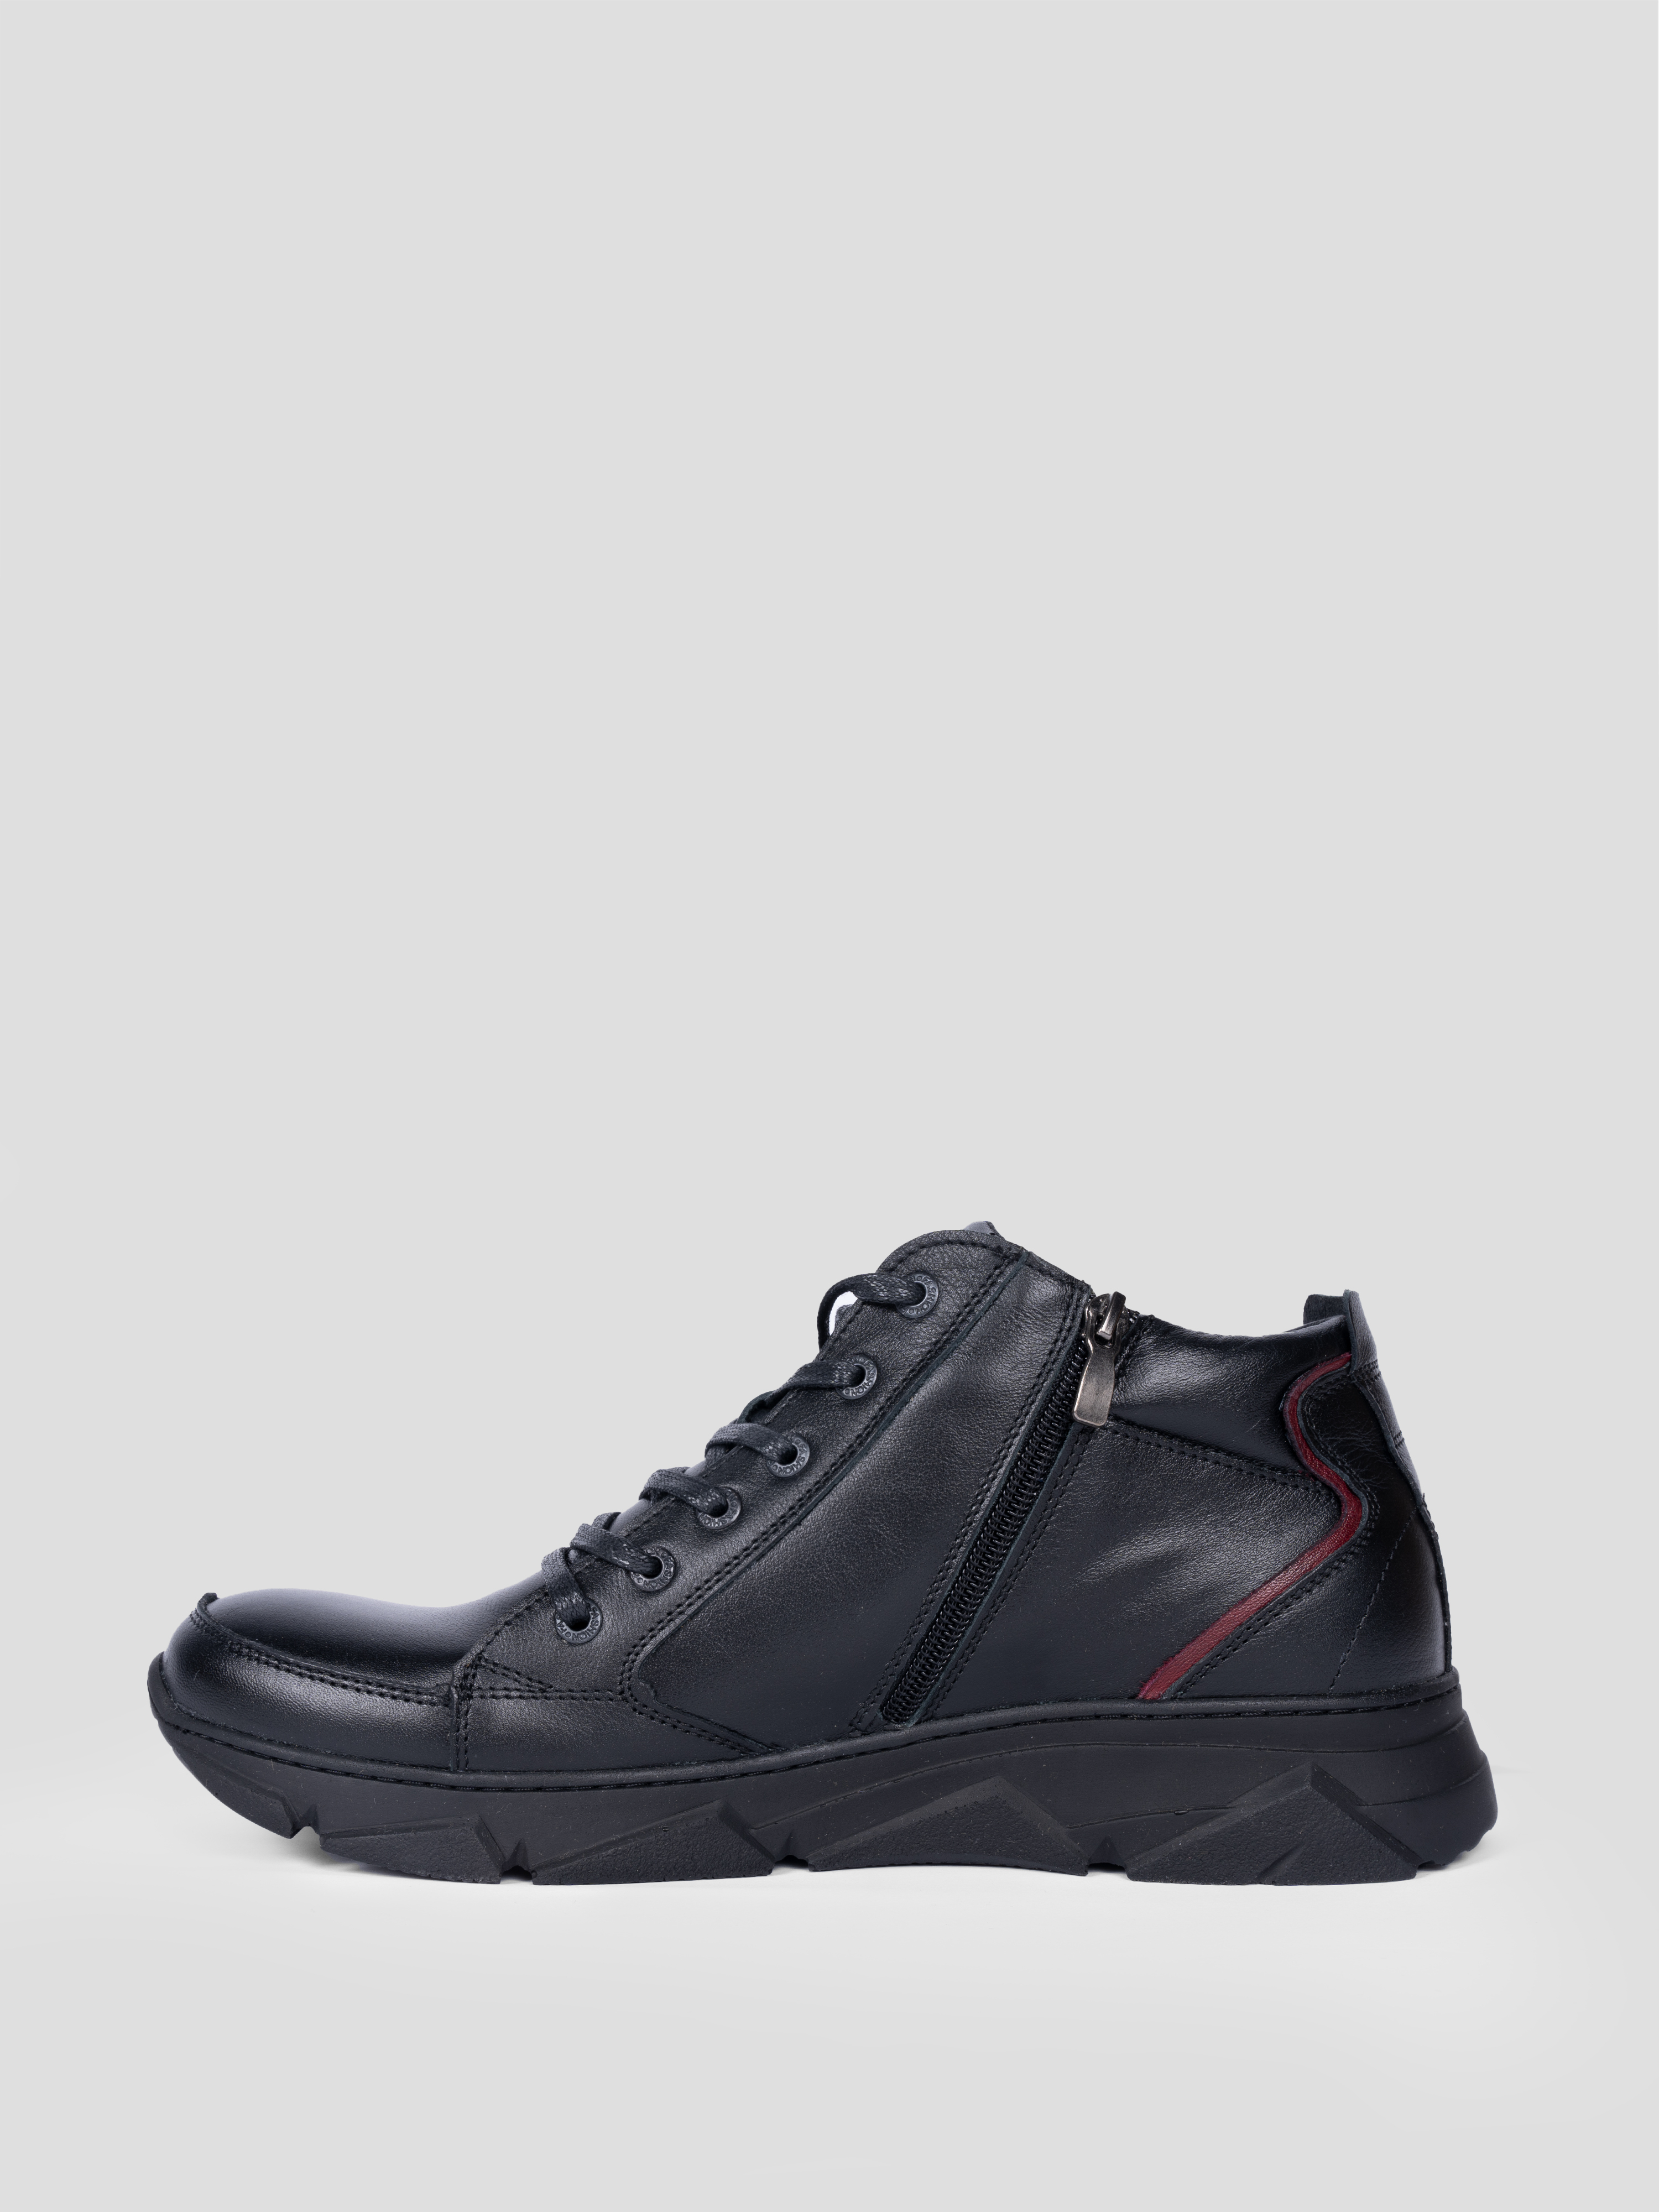 Ботинки мужские Reversal 0376-1 черные 44 RU